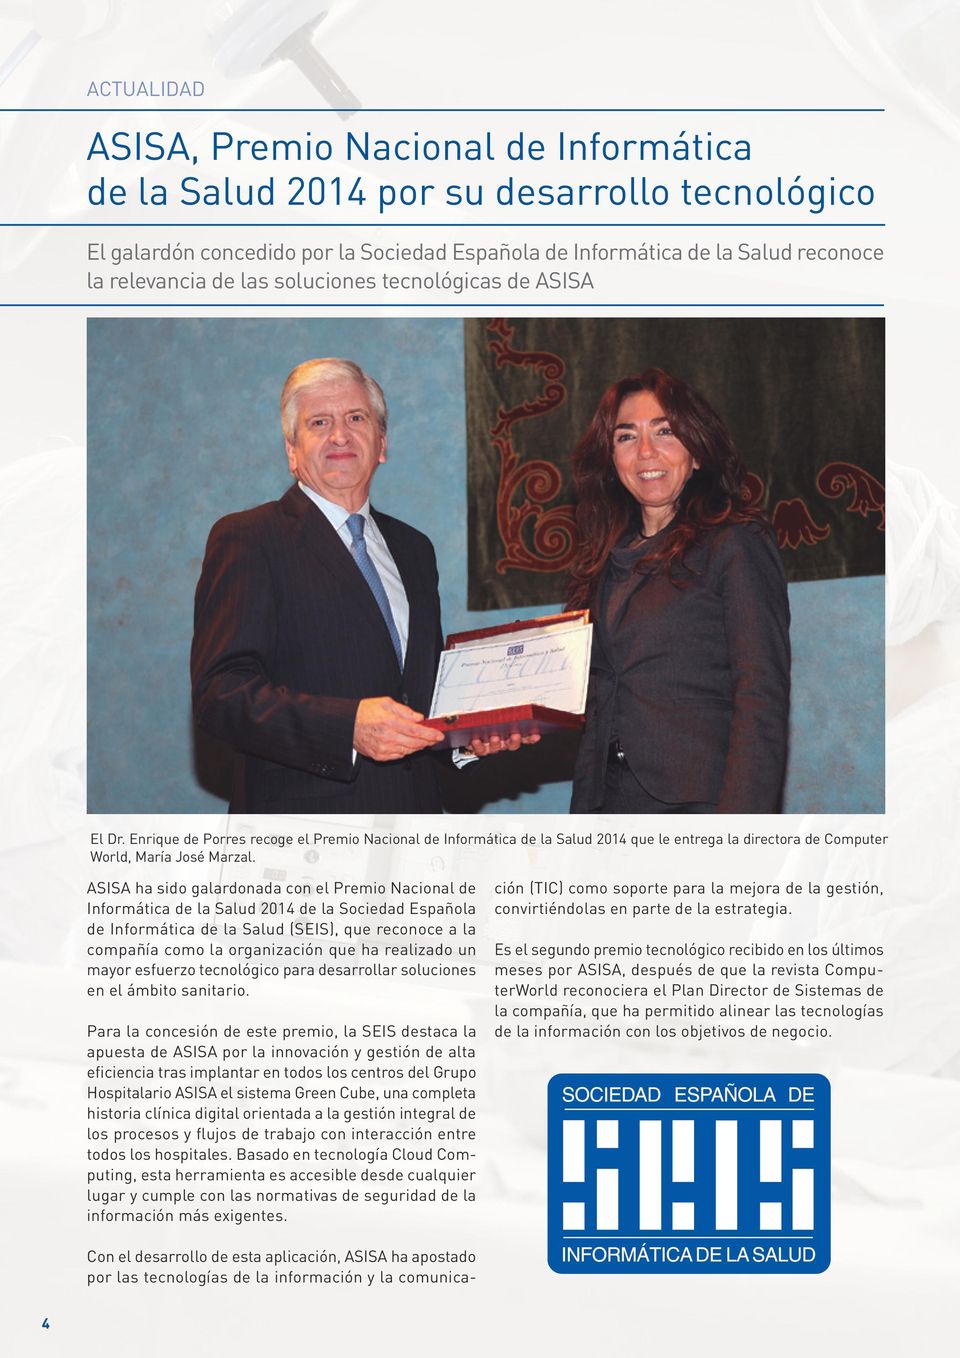 ASISA ha sido galardonada con el Premio Nacional de Informática de la Salud 2014 de la Sociedad Española de Informática de la Salud (SEIS), que reconoce a la compañía como la organización que ha